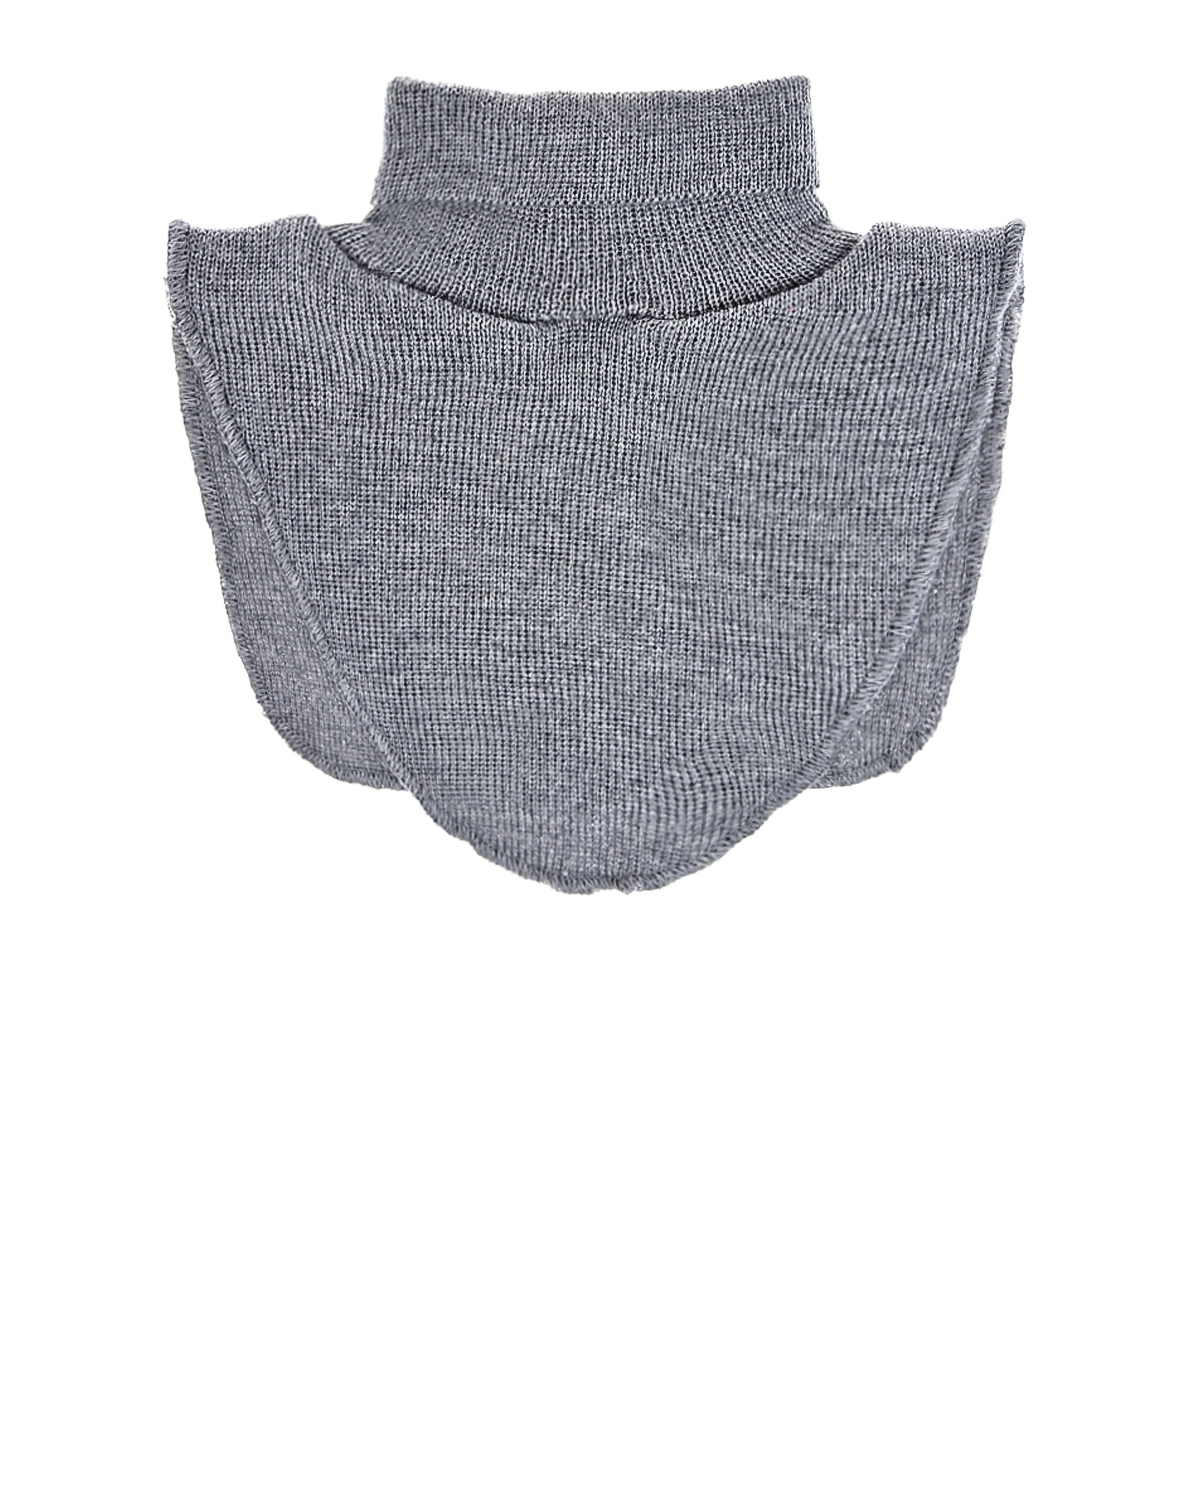 Светло-серый шарф-горло из шерсти MaxiMo детское, размер 1